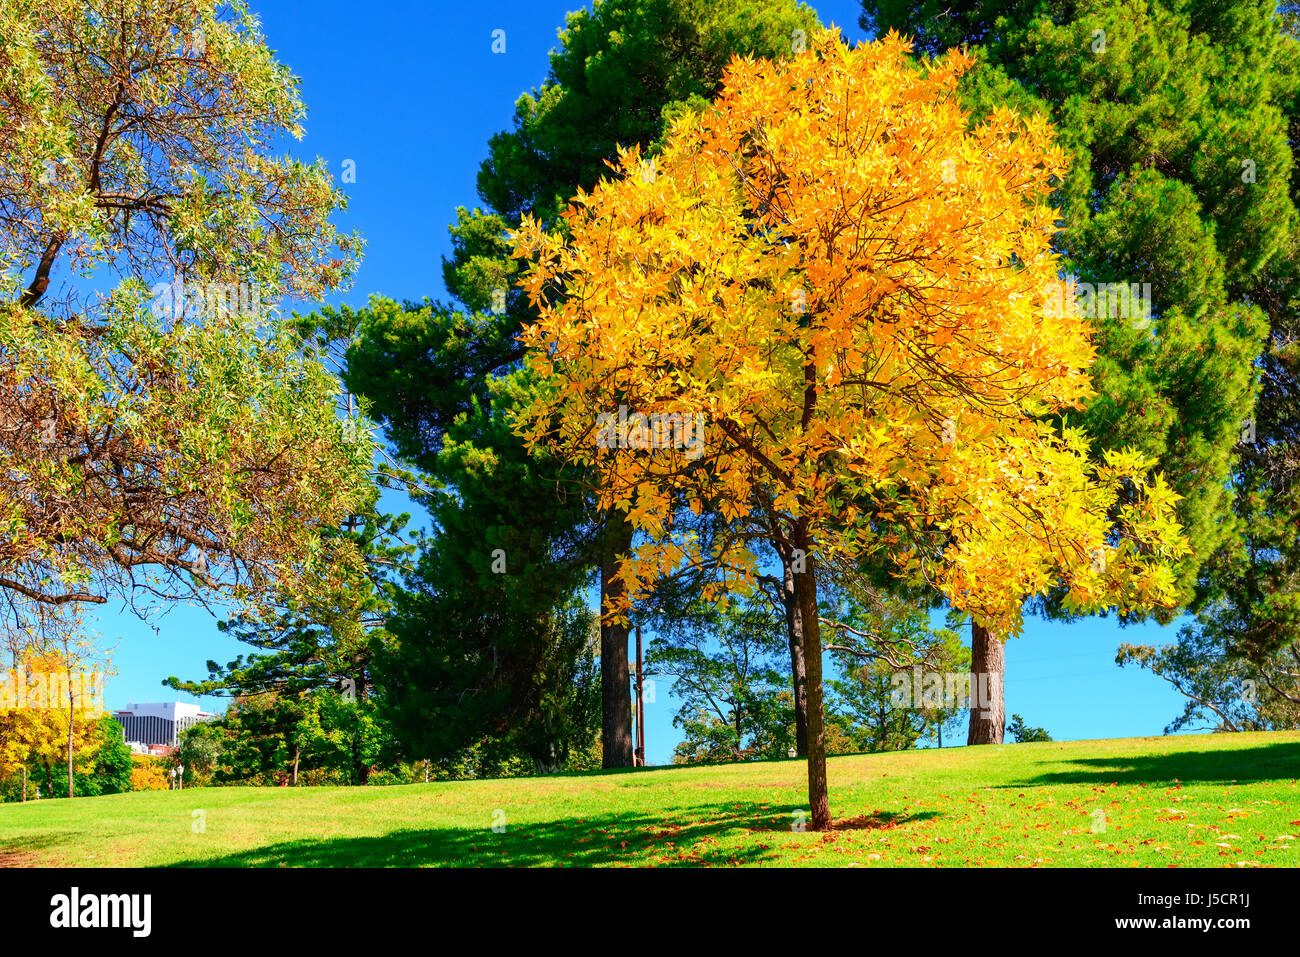 Di colore giallo brillante albero nella città di Adelaide parklands vicino al fiume Torrens, Sud Australia Foto Stock